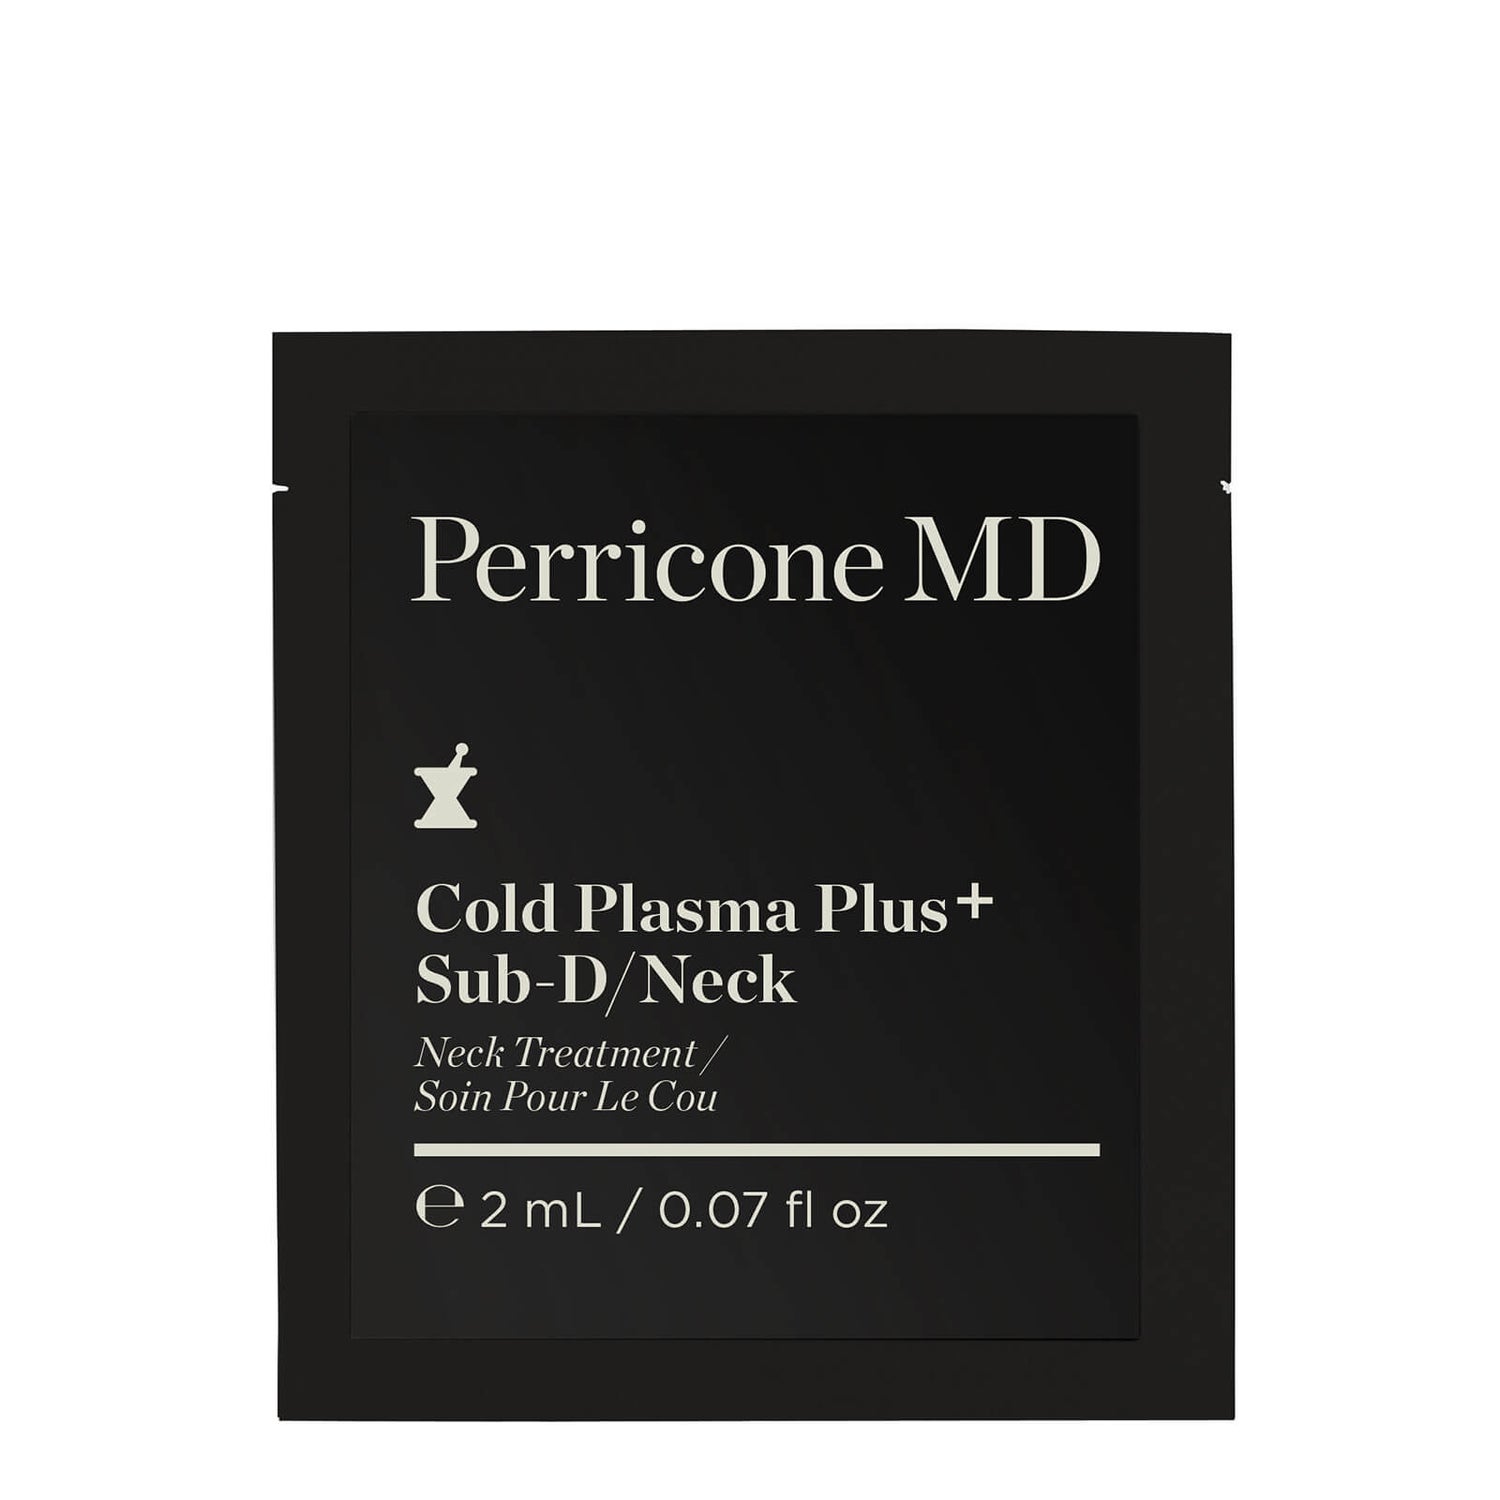 Cold Plasma Plus+ Sub-D/Neck (2 ml)